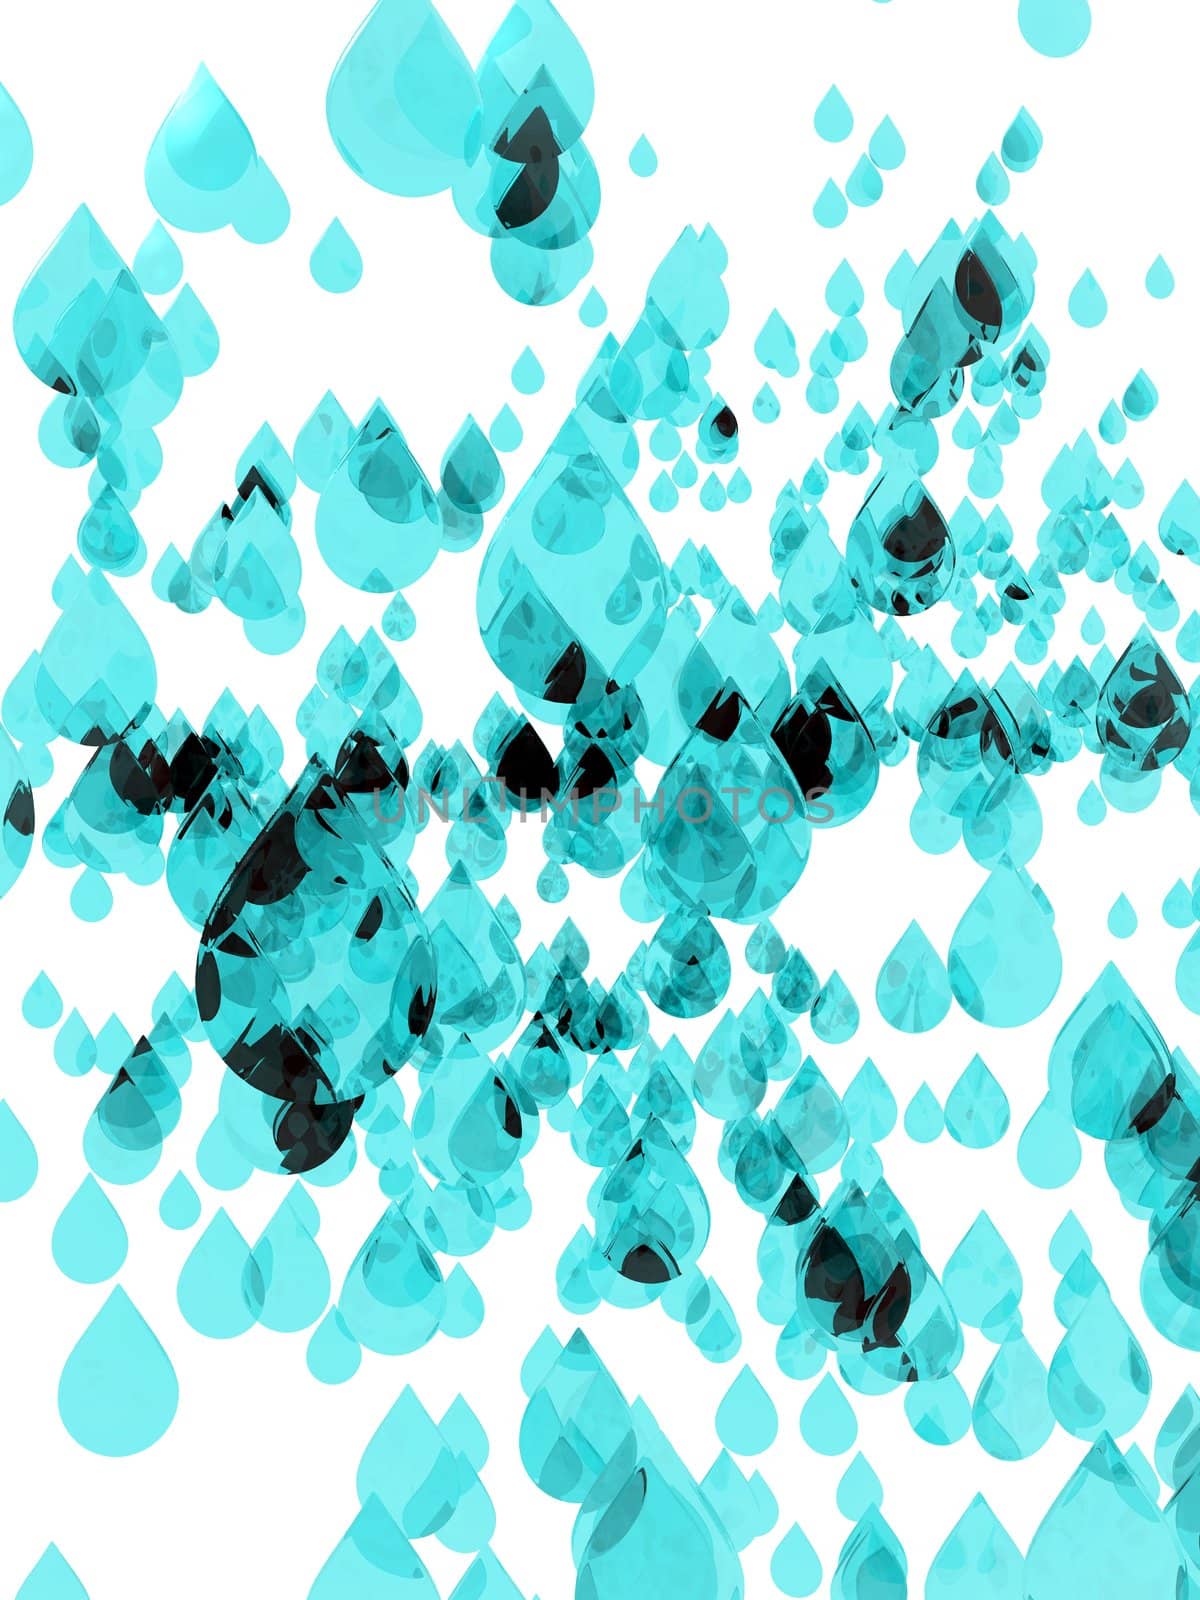 Water Drops by jasony00